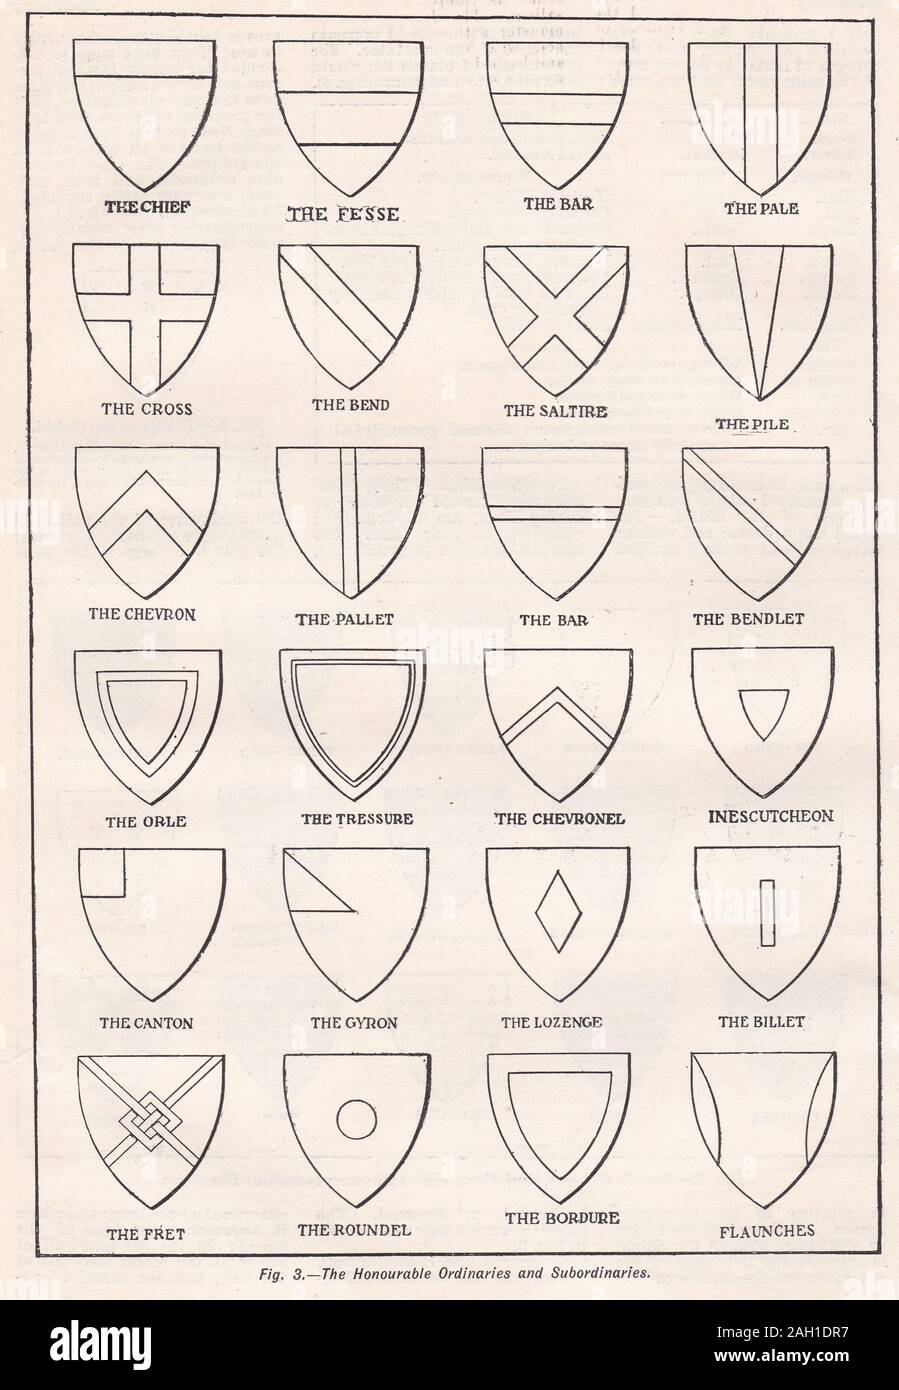 Vintage illustration de l'Honorable Ordinaries et Subordaries Banque D'Images